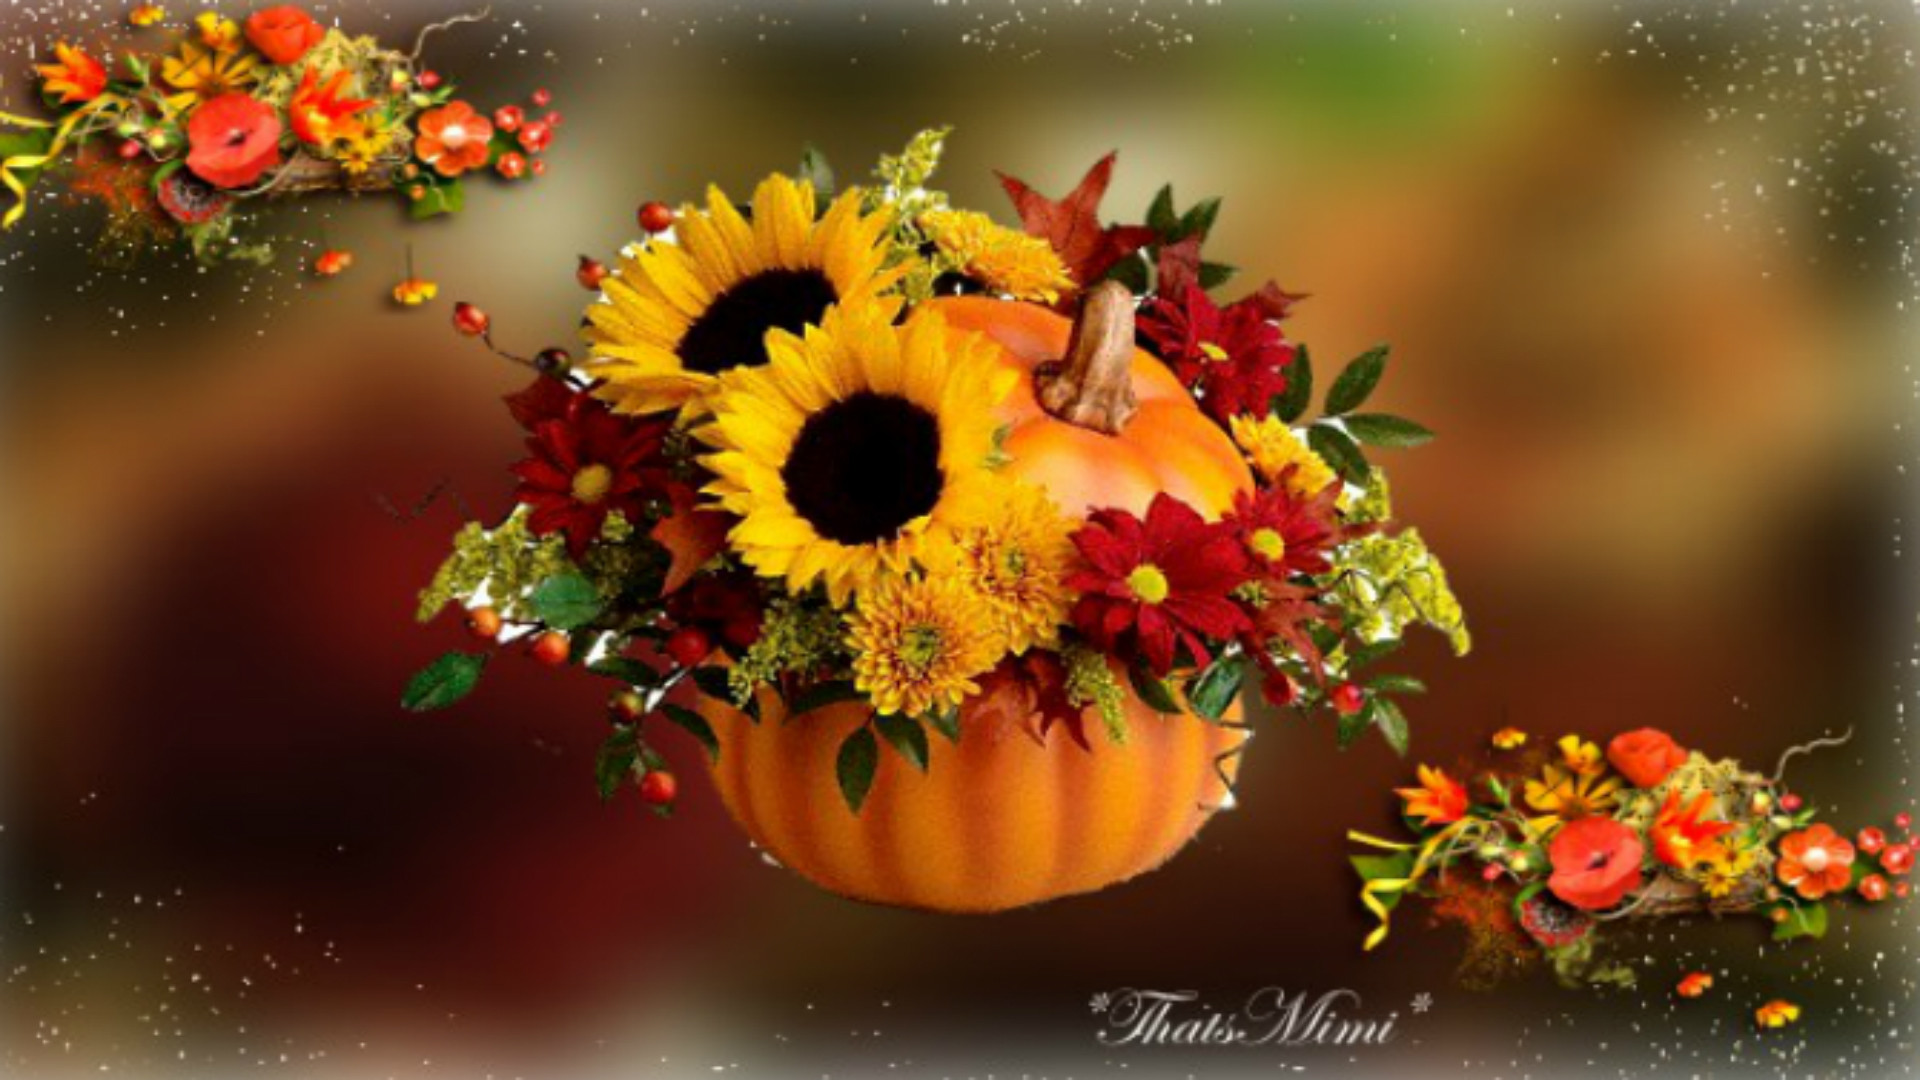 1920x1080 Fall Pumpkins and Flowers Desktop Wallpapers